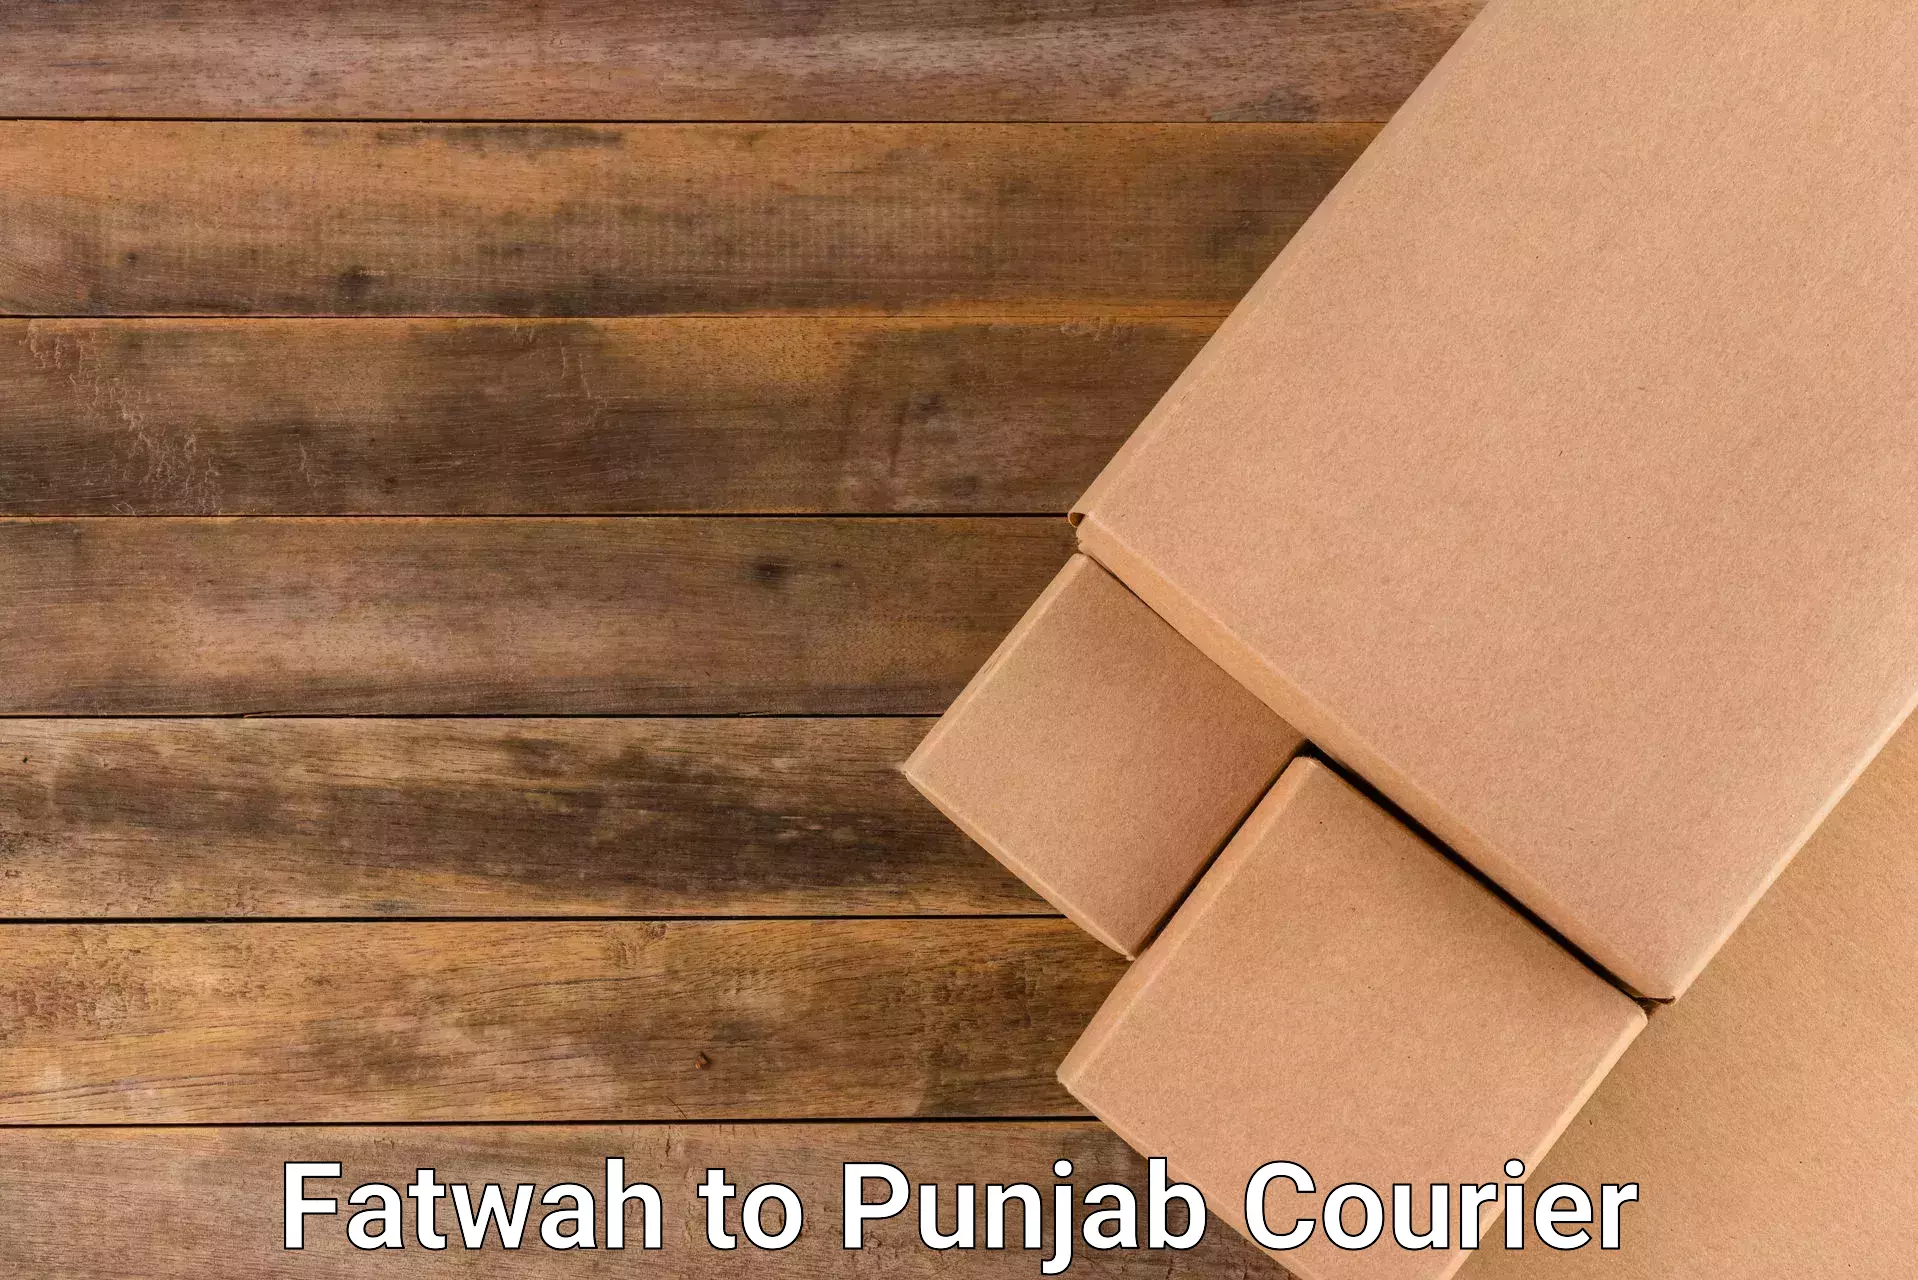 Tailored shipping plans Fatwah to Punjab